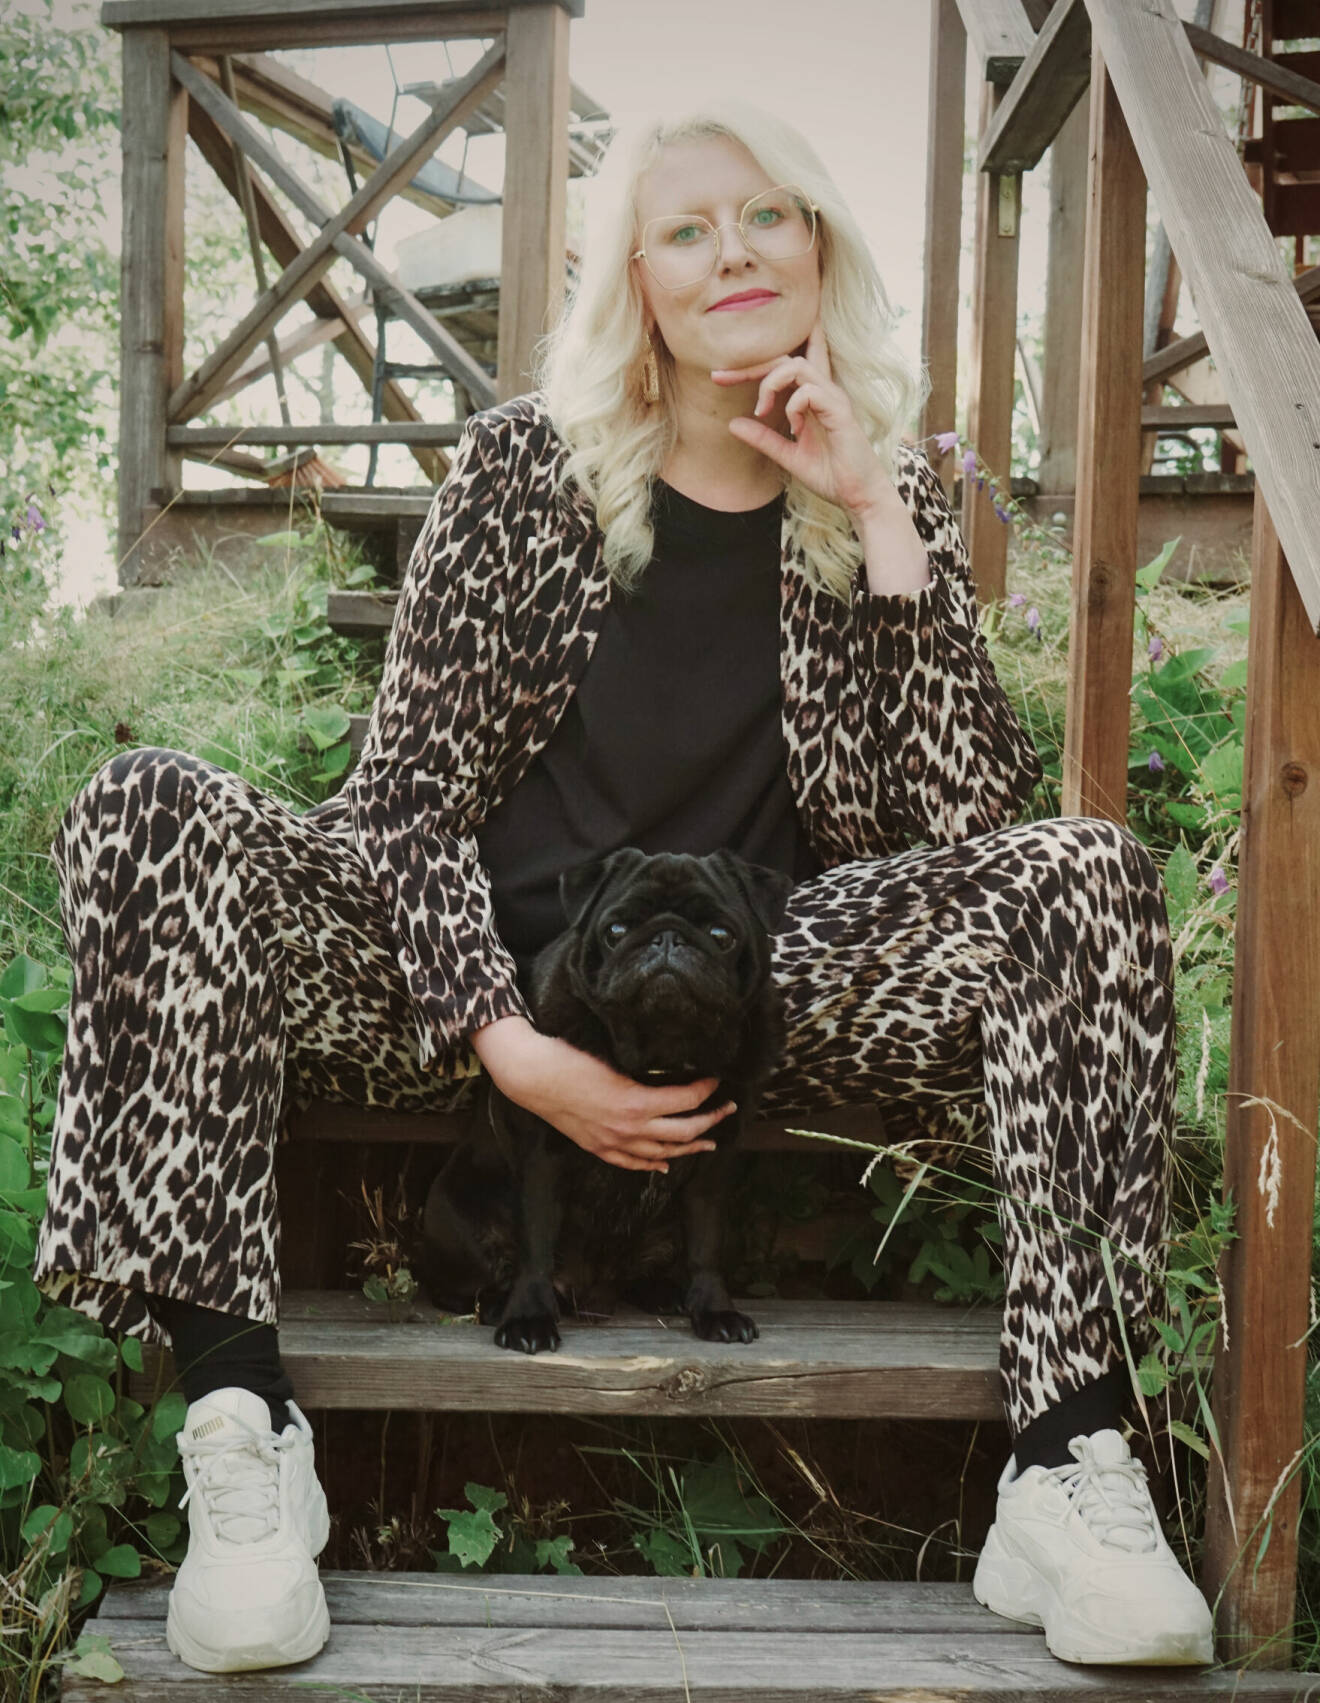 Ida Högström fotograferad utomhus, hon sitter i en trätrappa tillsammans med en svart liten mops. Hon är klädd i leopardmönstrade kläder och bär stora glasögon.